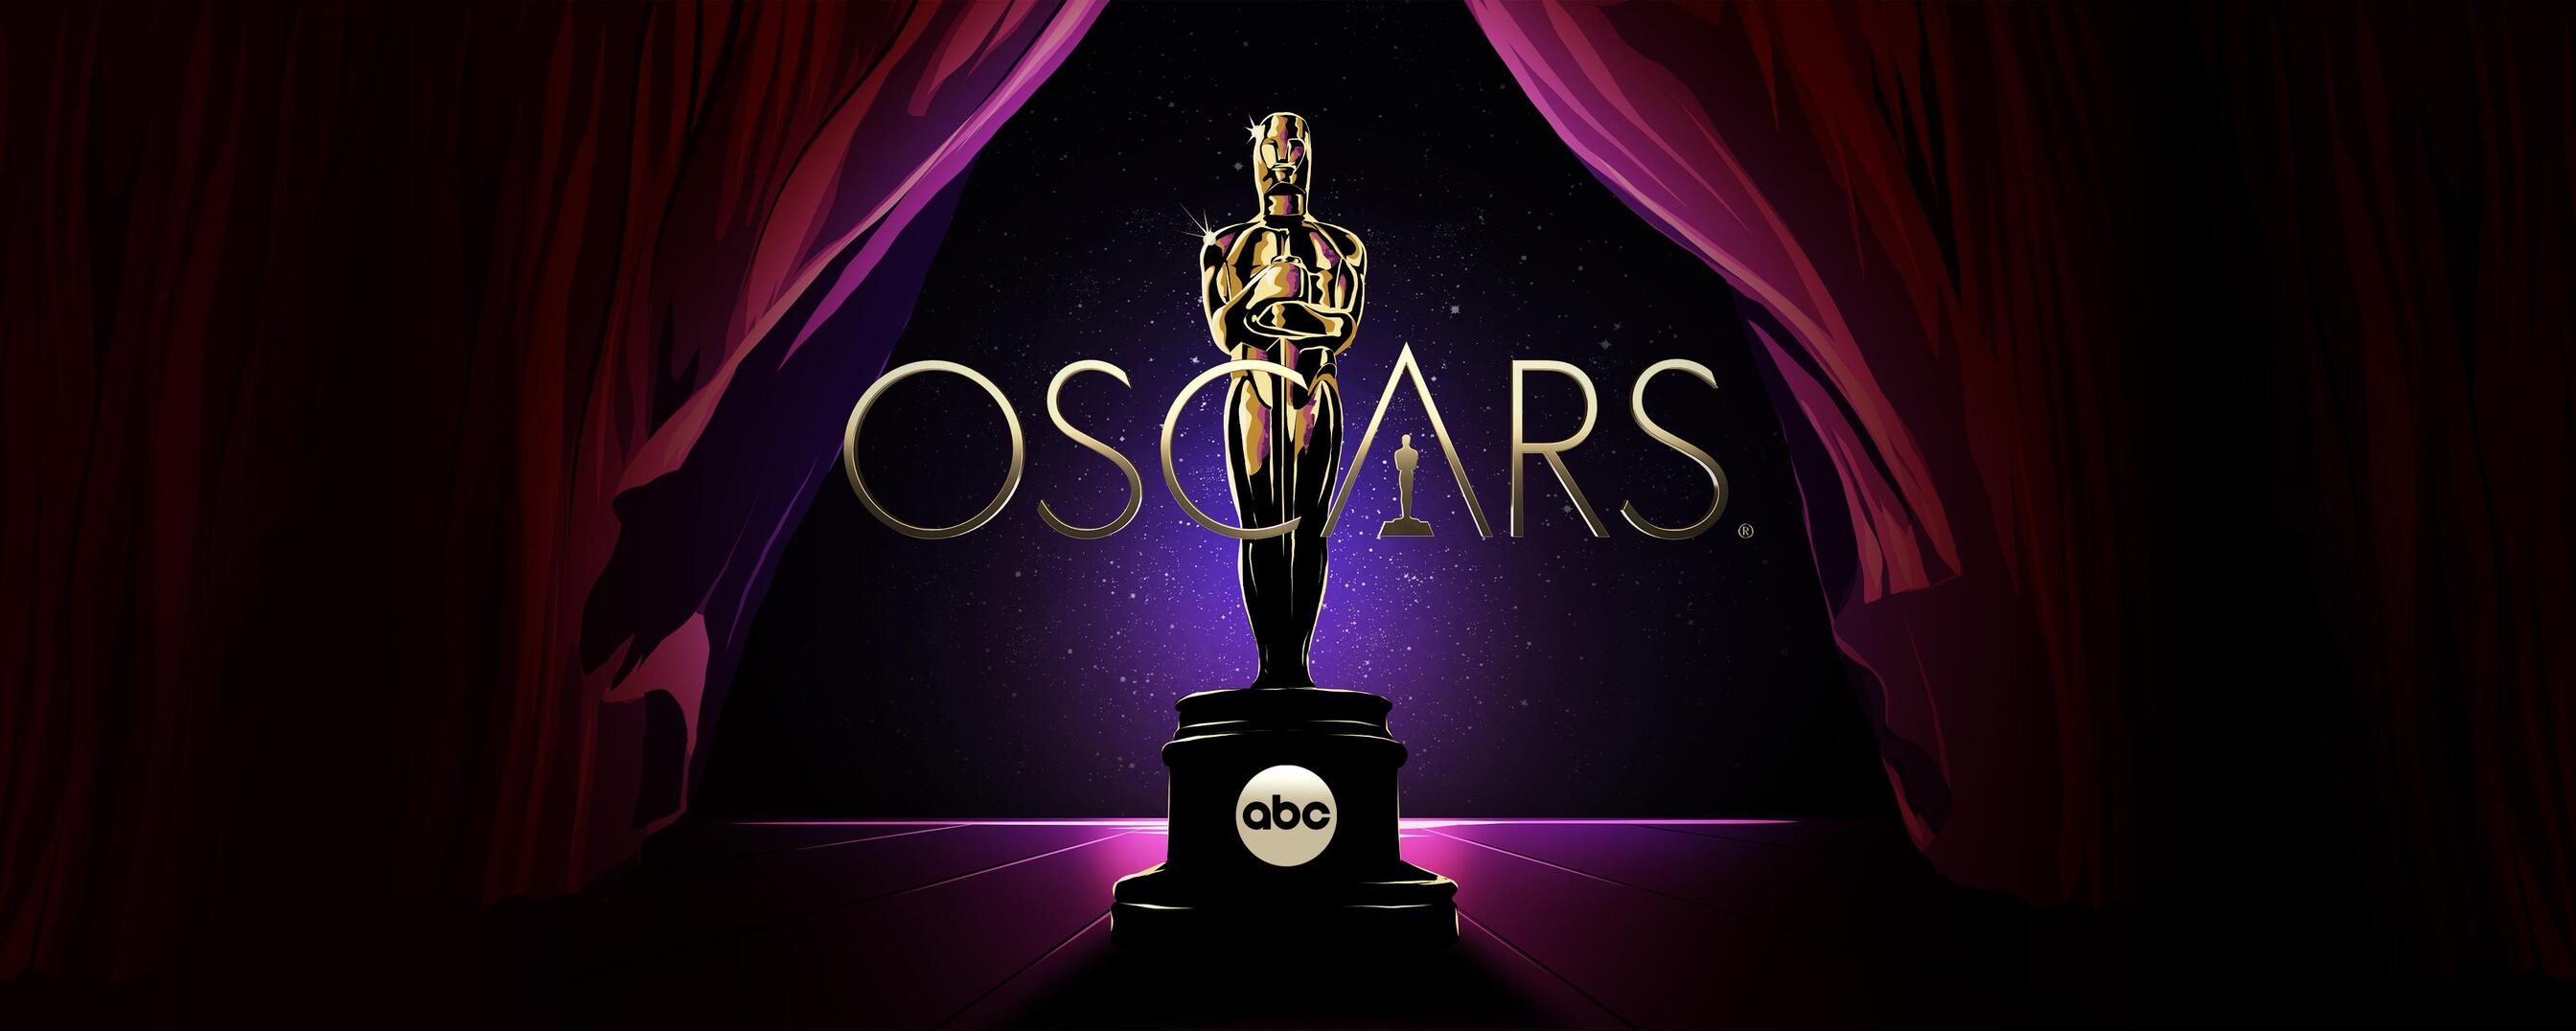 The Oscars 2022 | 94th Academy Awards